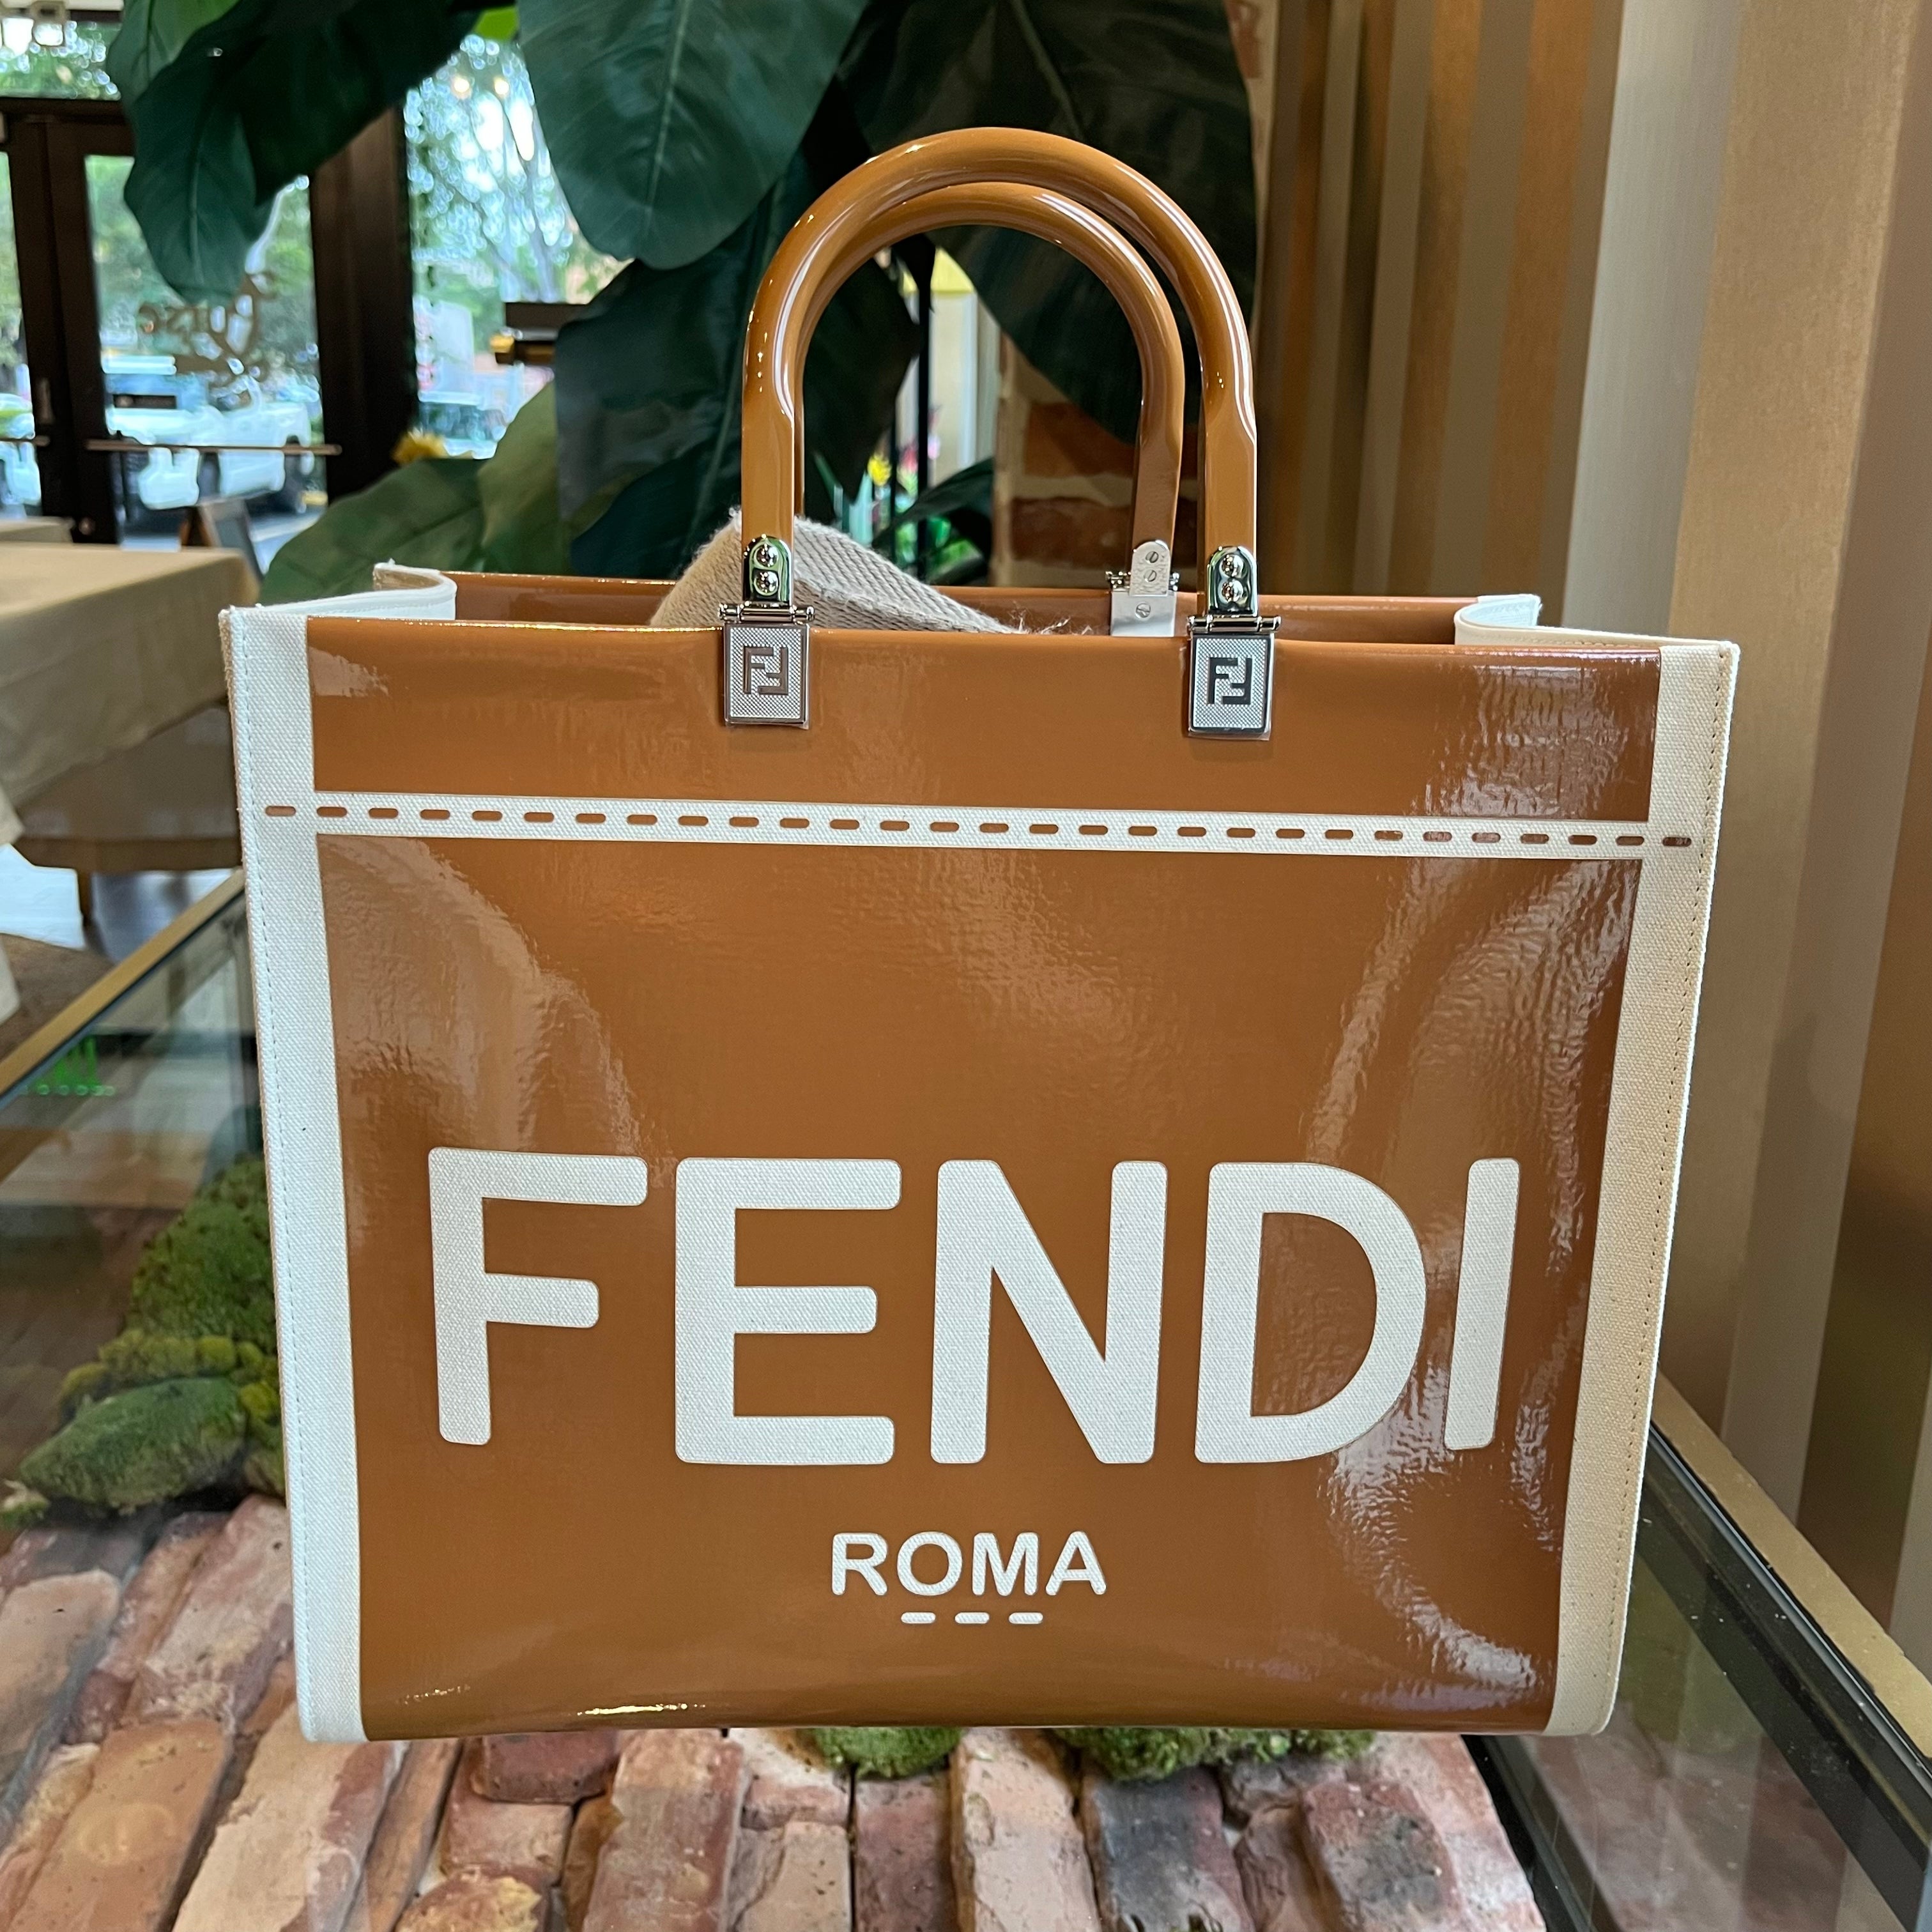 Fendi Roma Large Canvas Shopper Tote Bag